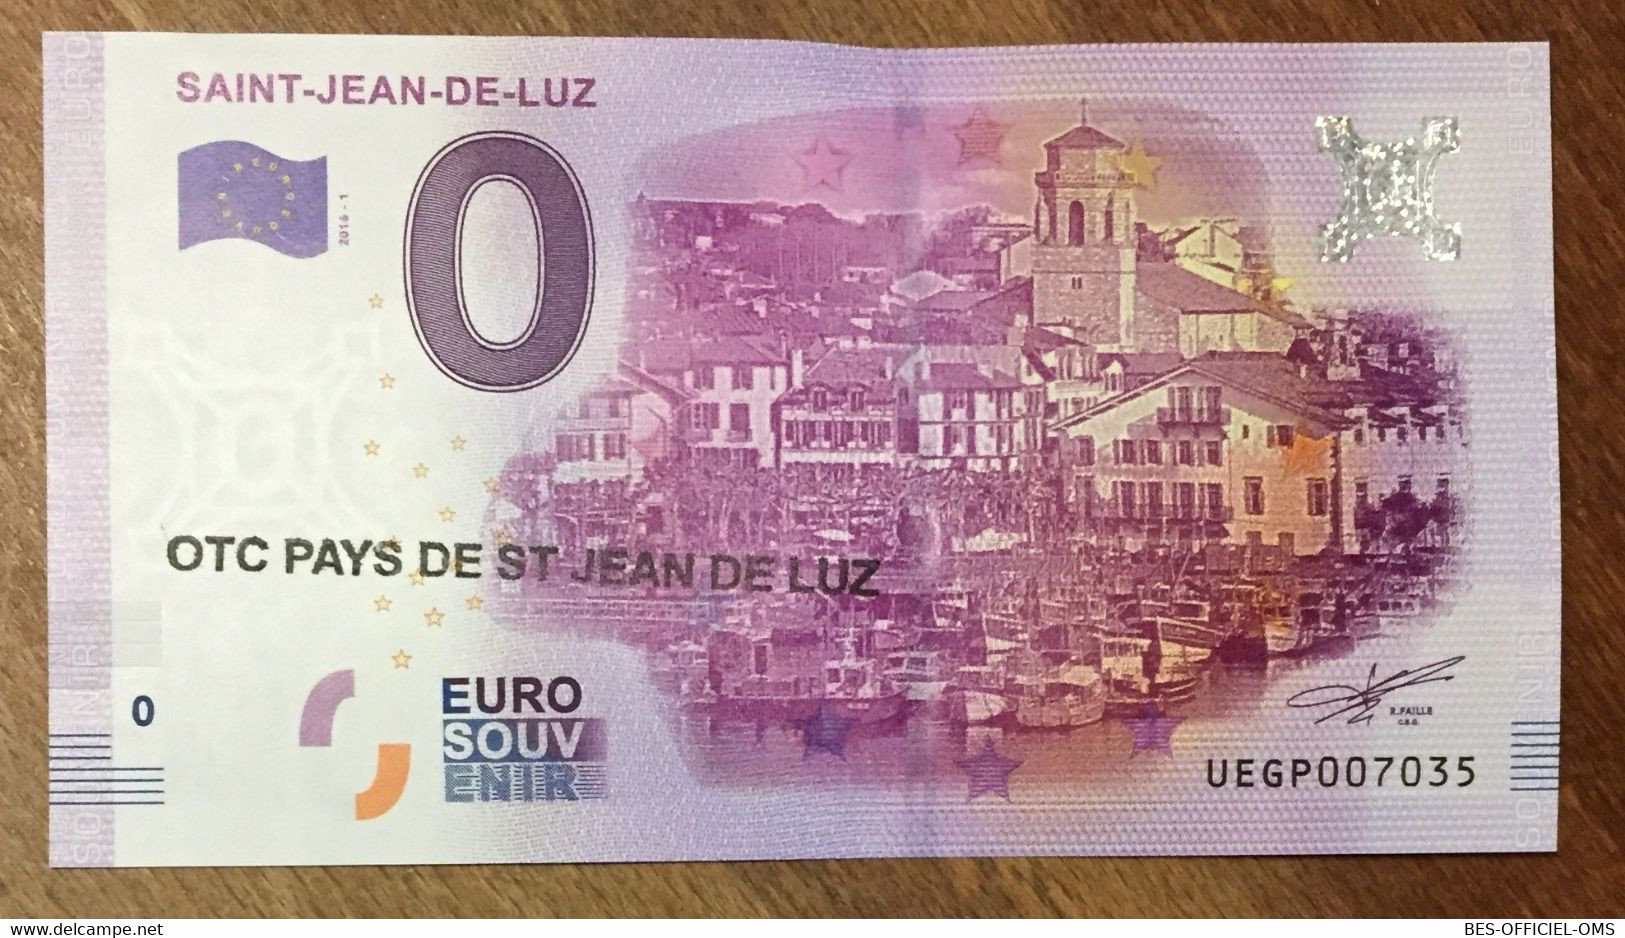 2016 BILLET 0 EURO SOUVENIR DPT 64 SAINT-JEAN-DE-LUZ + TAMPON ZERO 0 EURO SCHEIN BANKNOTE PAPER MONEY - Private Proofs / Unofficial